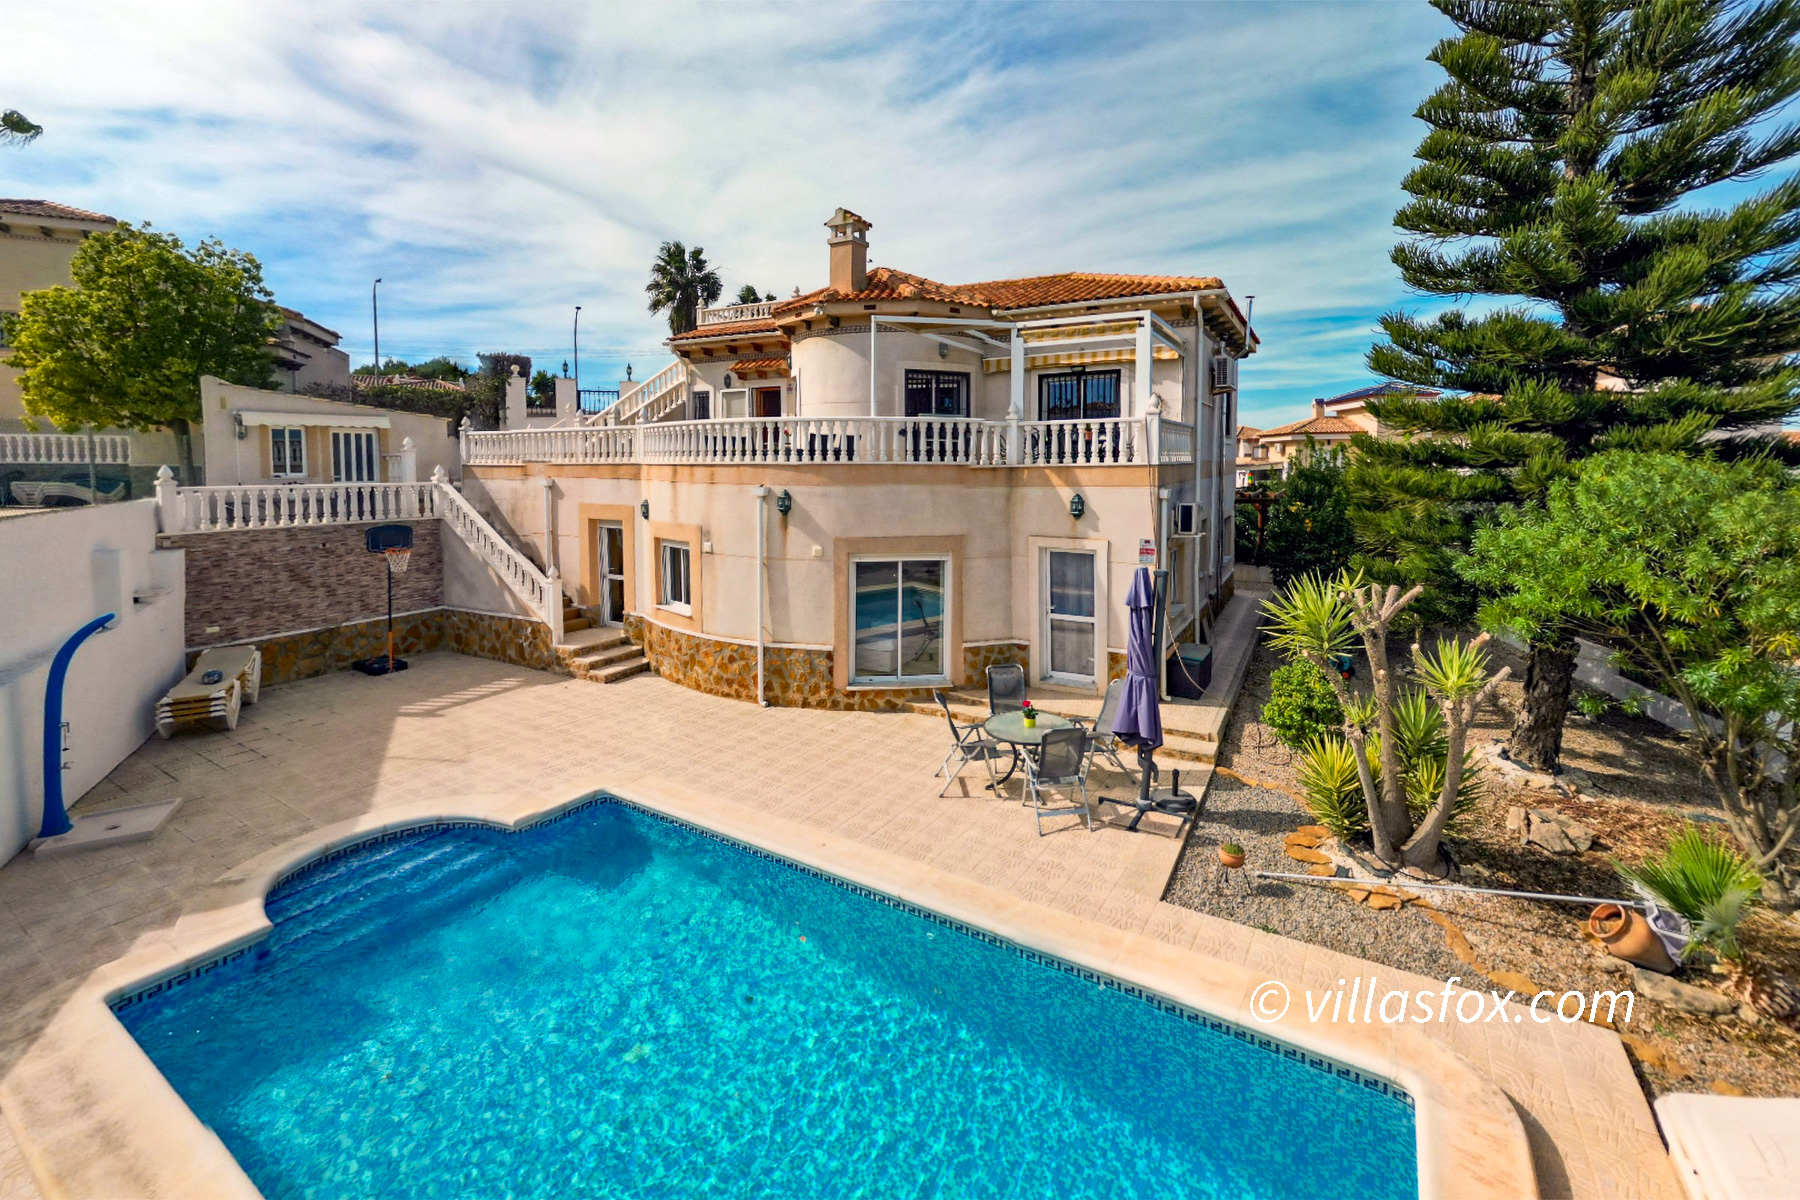 For Sale in San Miguel de Salinas, luxury Villas María villa with 6 bedrooms